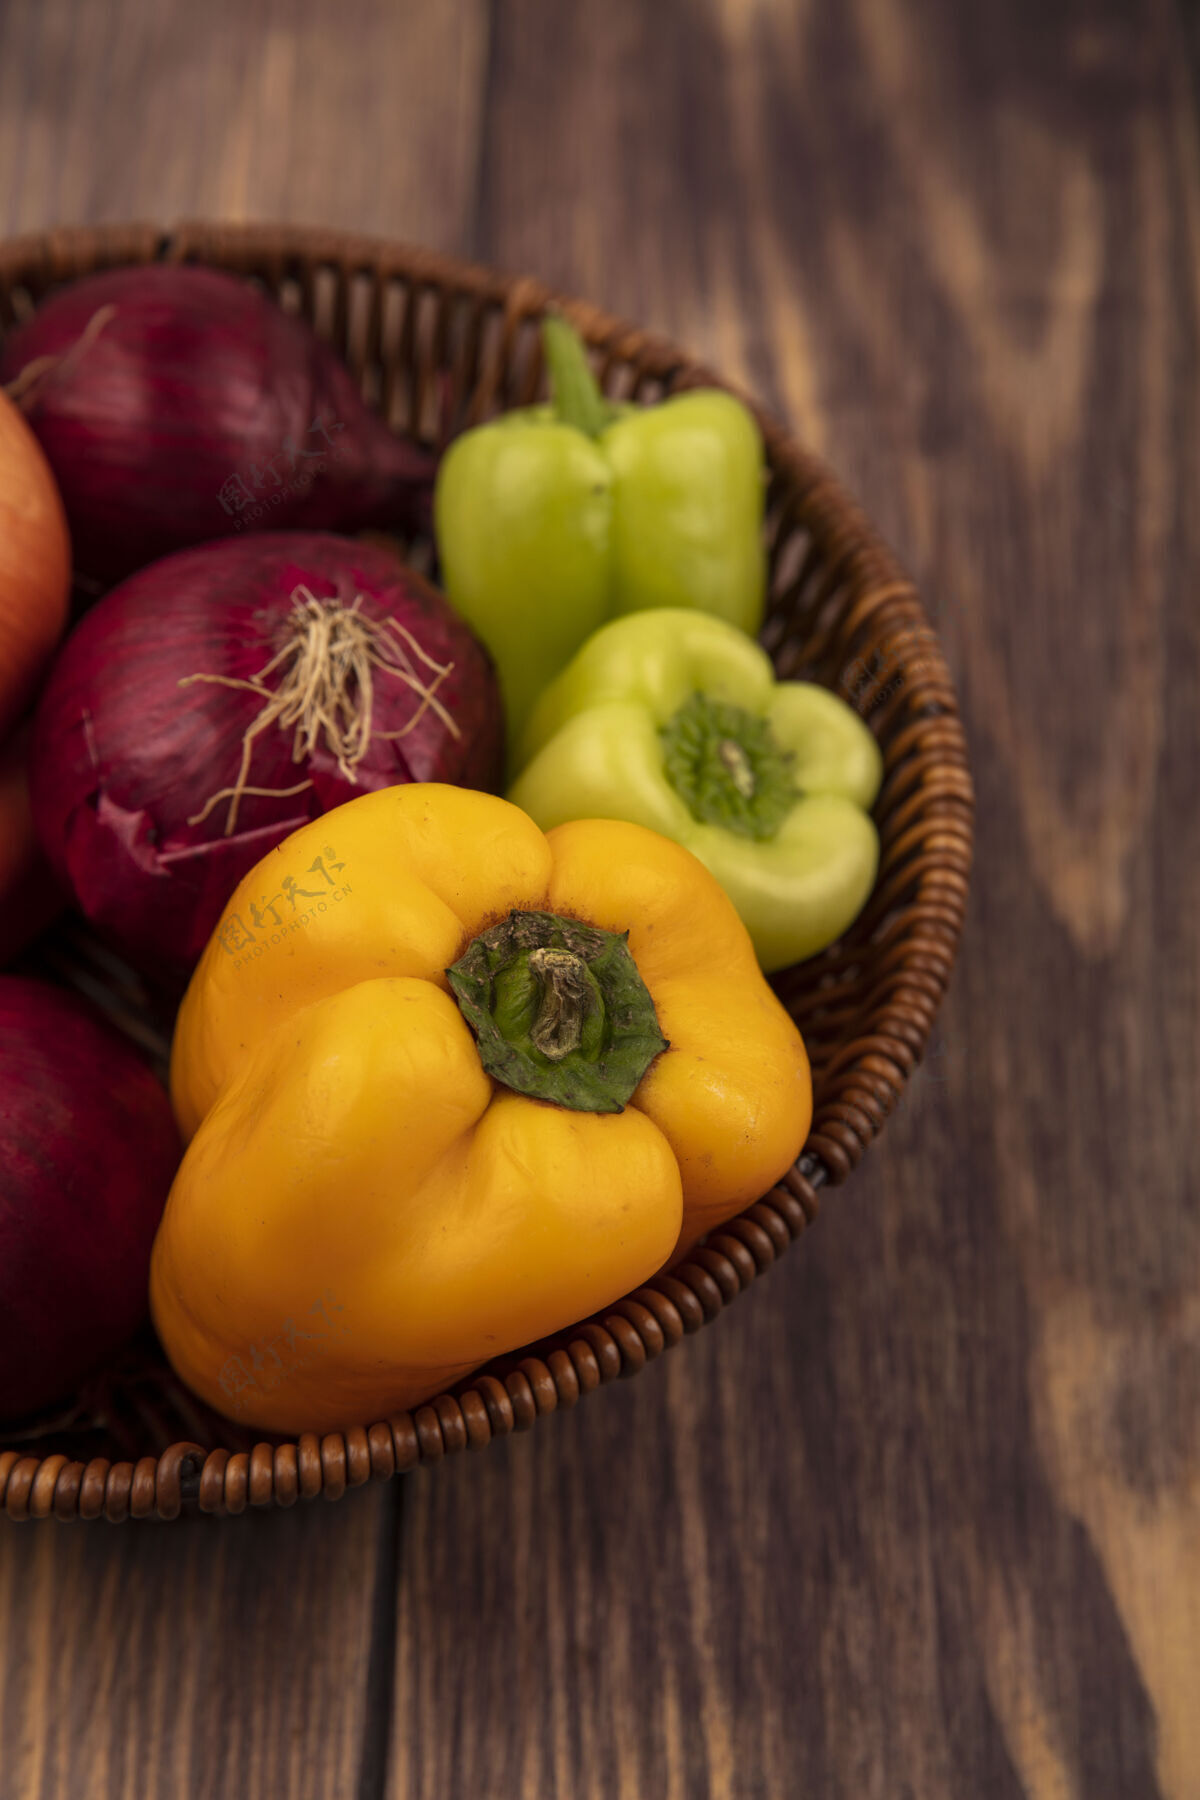 食品顶视图新鲜蔬菜 如彩色甜椒和洋葱在木桶表面美味蔬菜新鲜